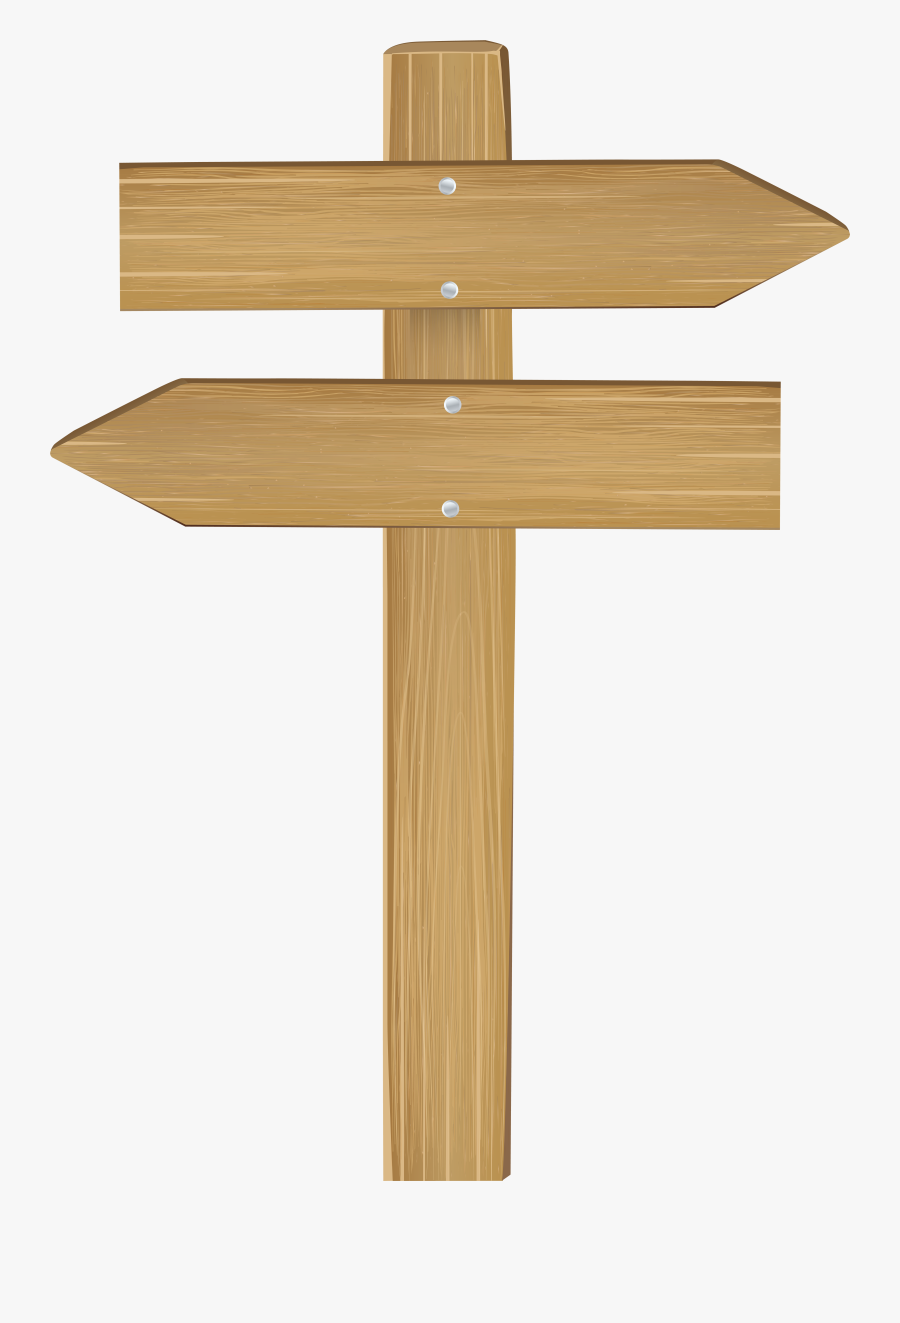 Transparent Wooden Barrel Clipart - Wooden Arrow Sign Png, Transparent Clipart